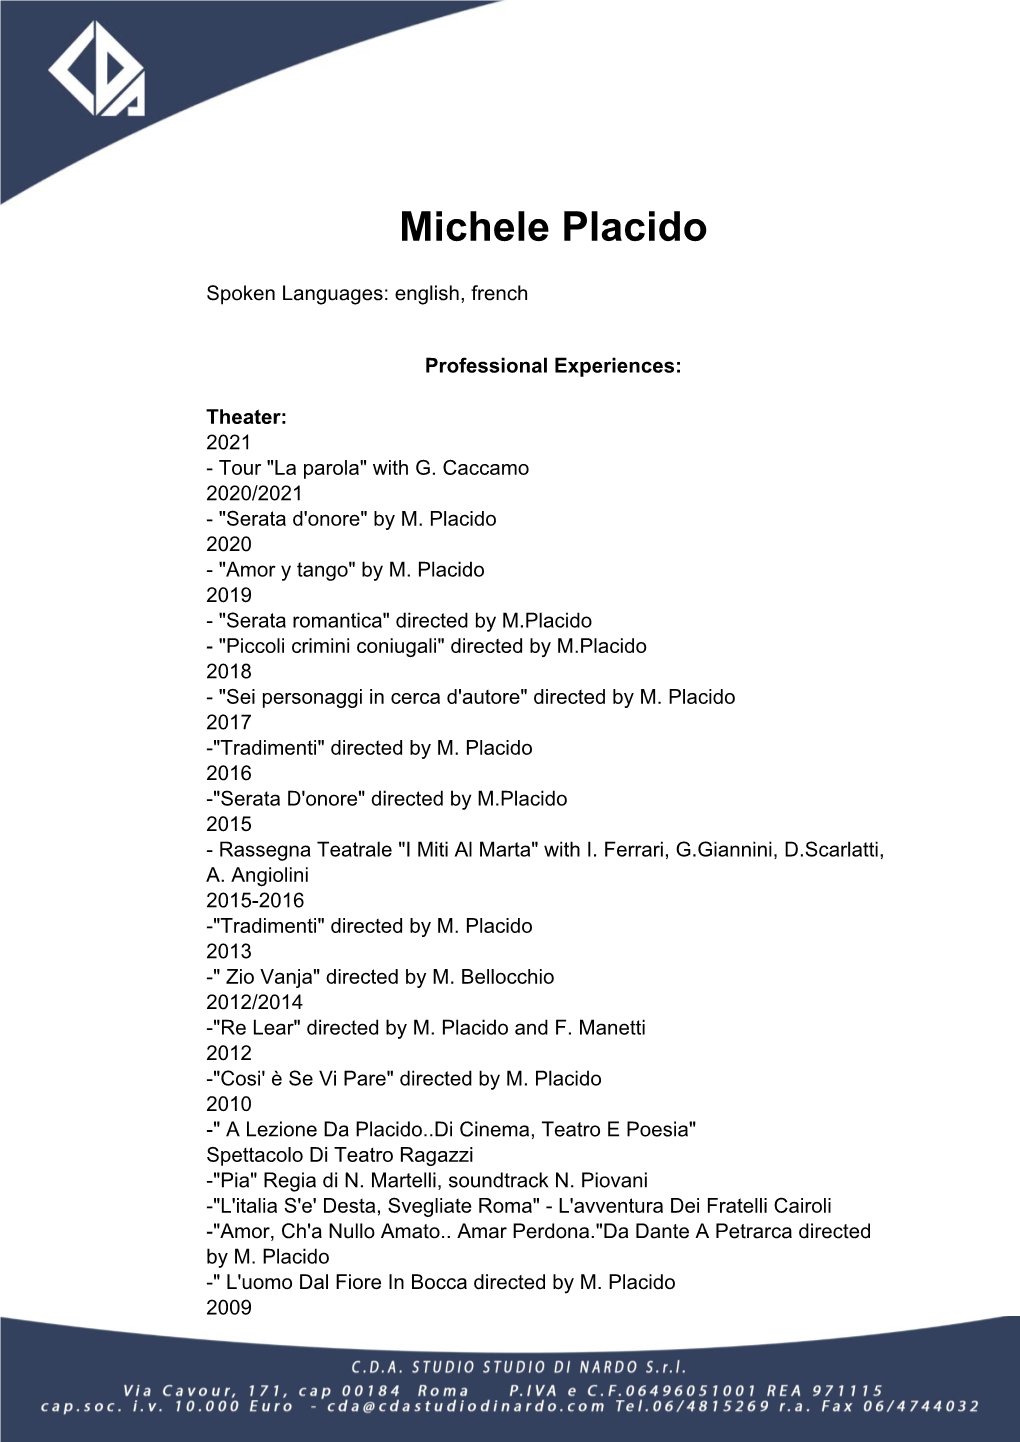 Michele Placido